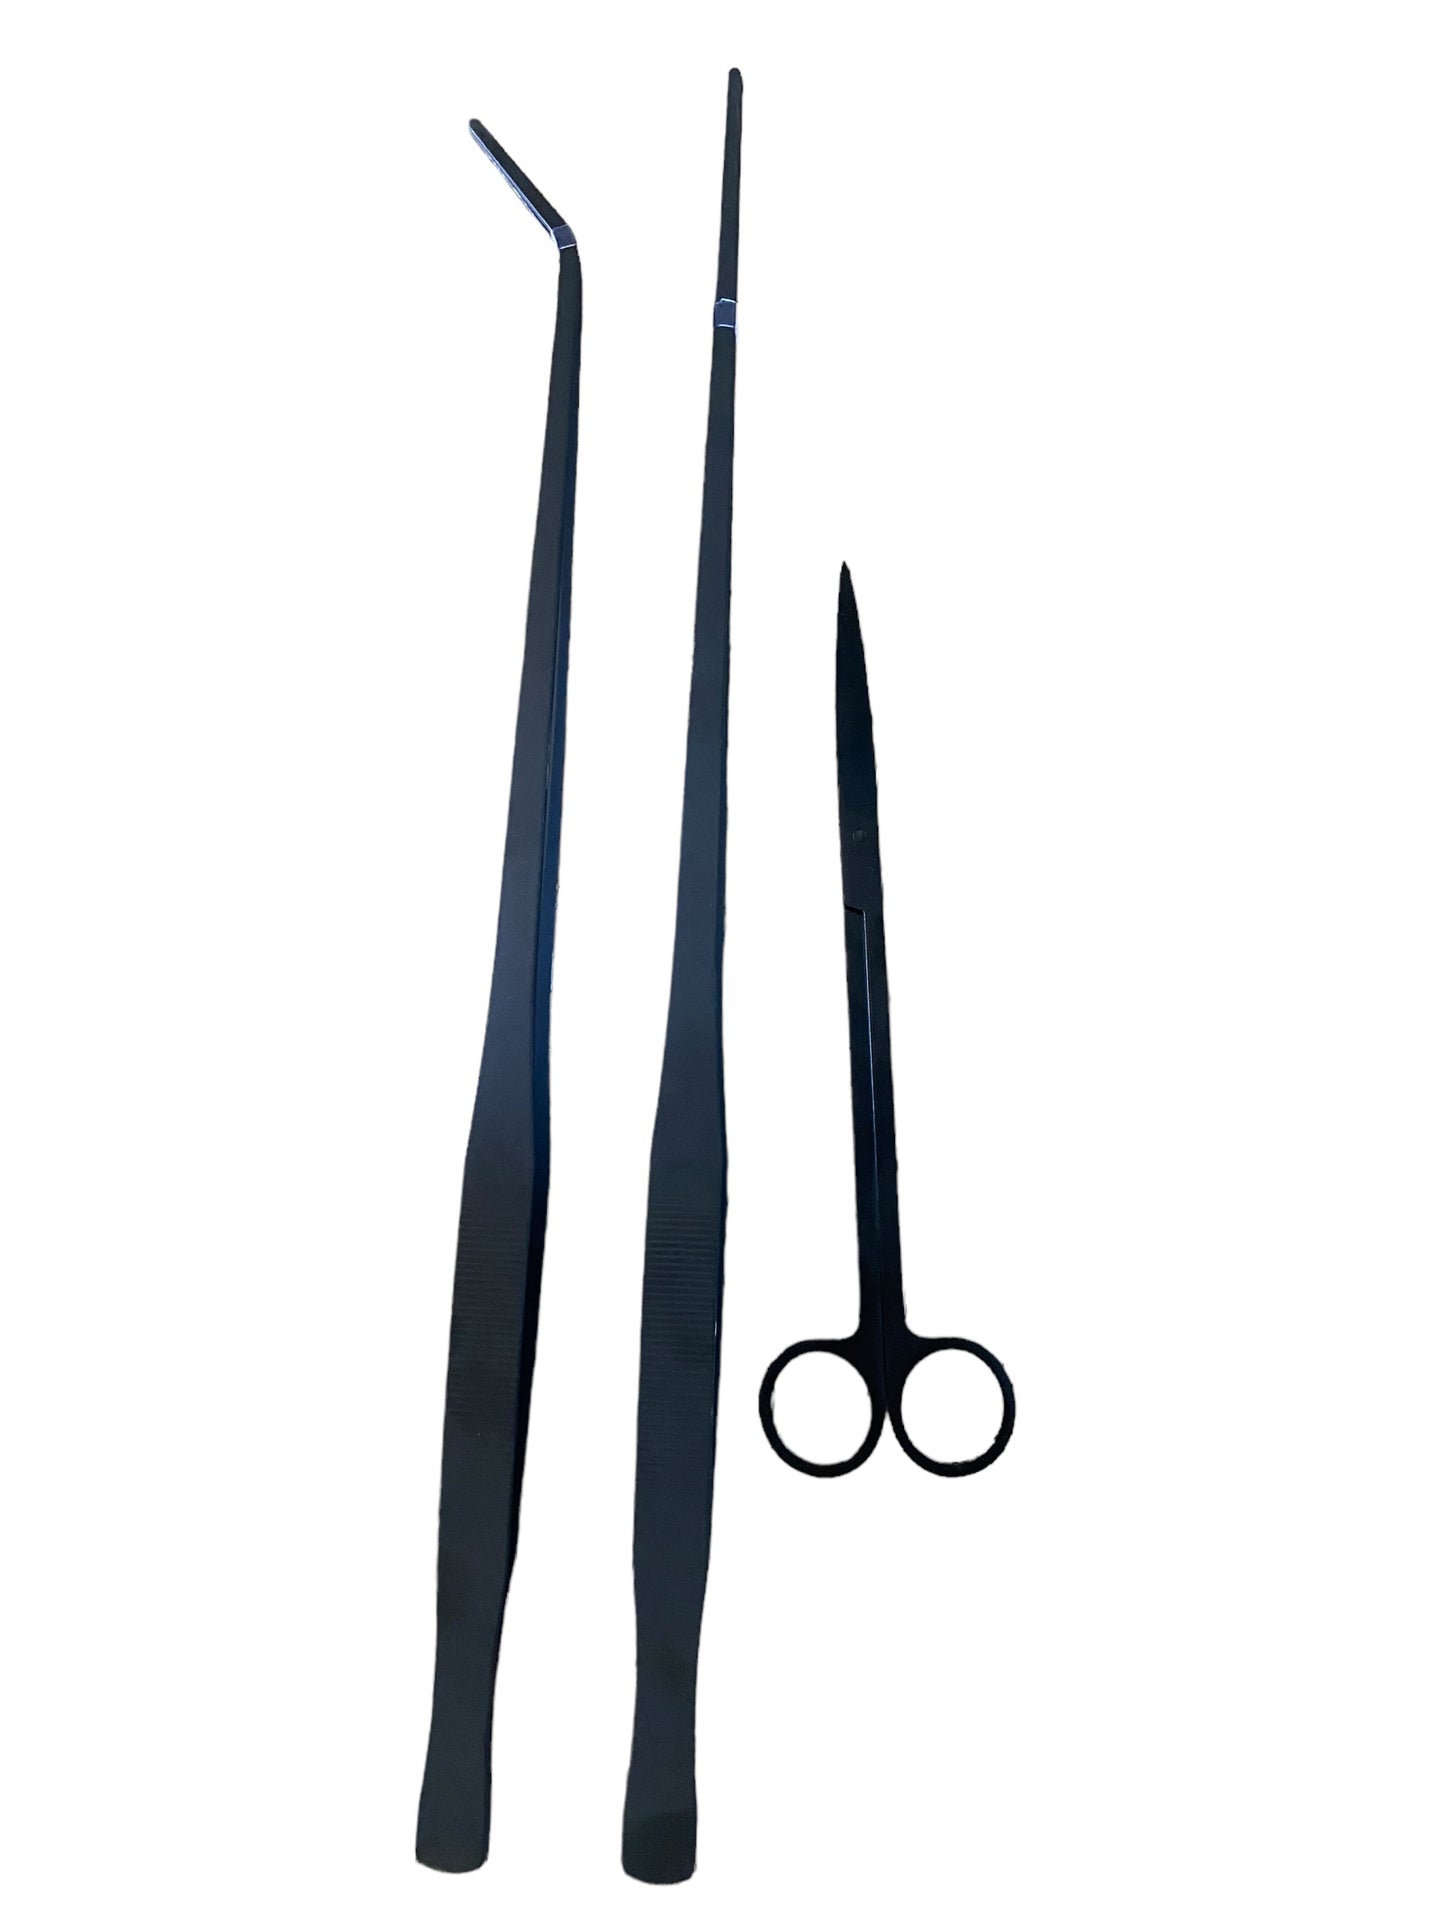 Terrarium tweezer combo - 48cm bended & straight + scissors